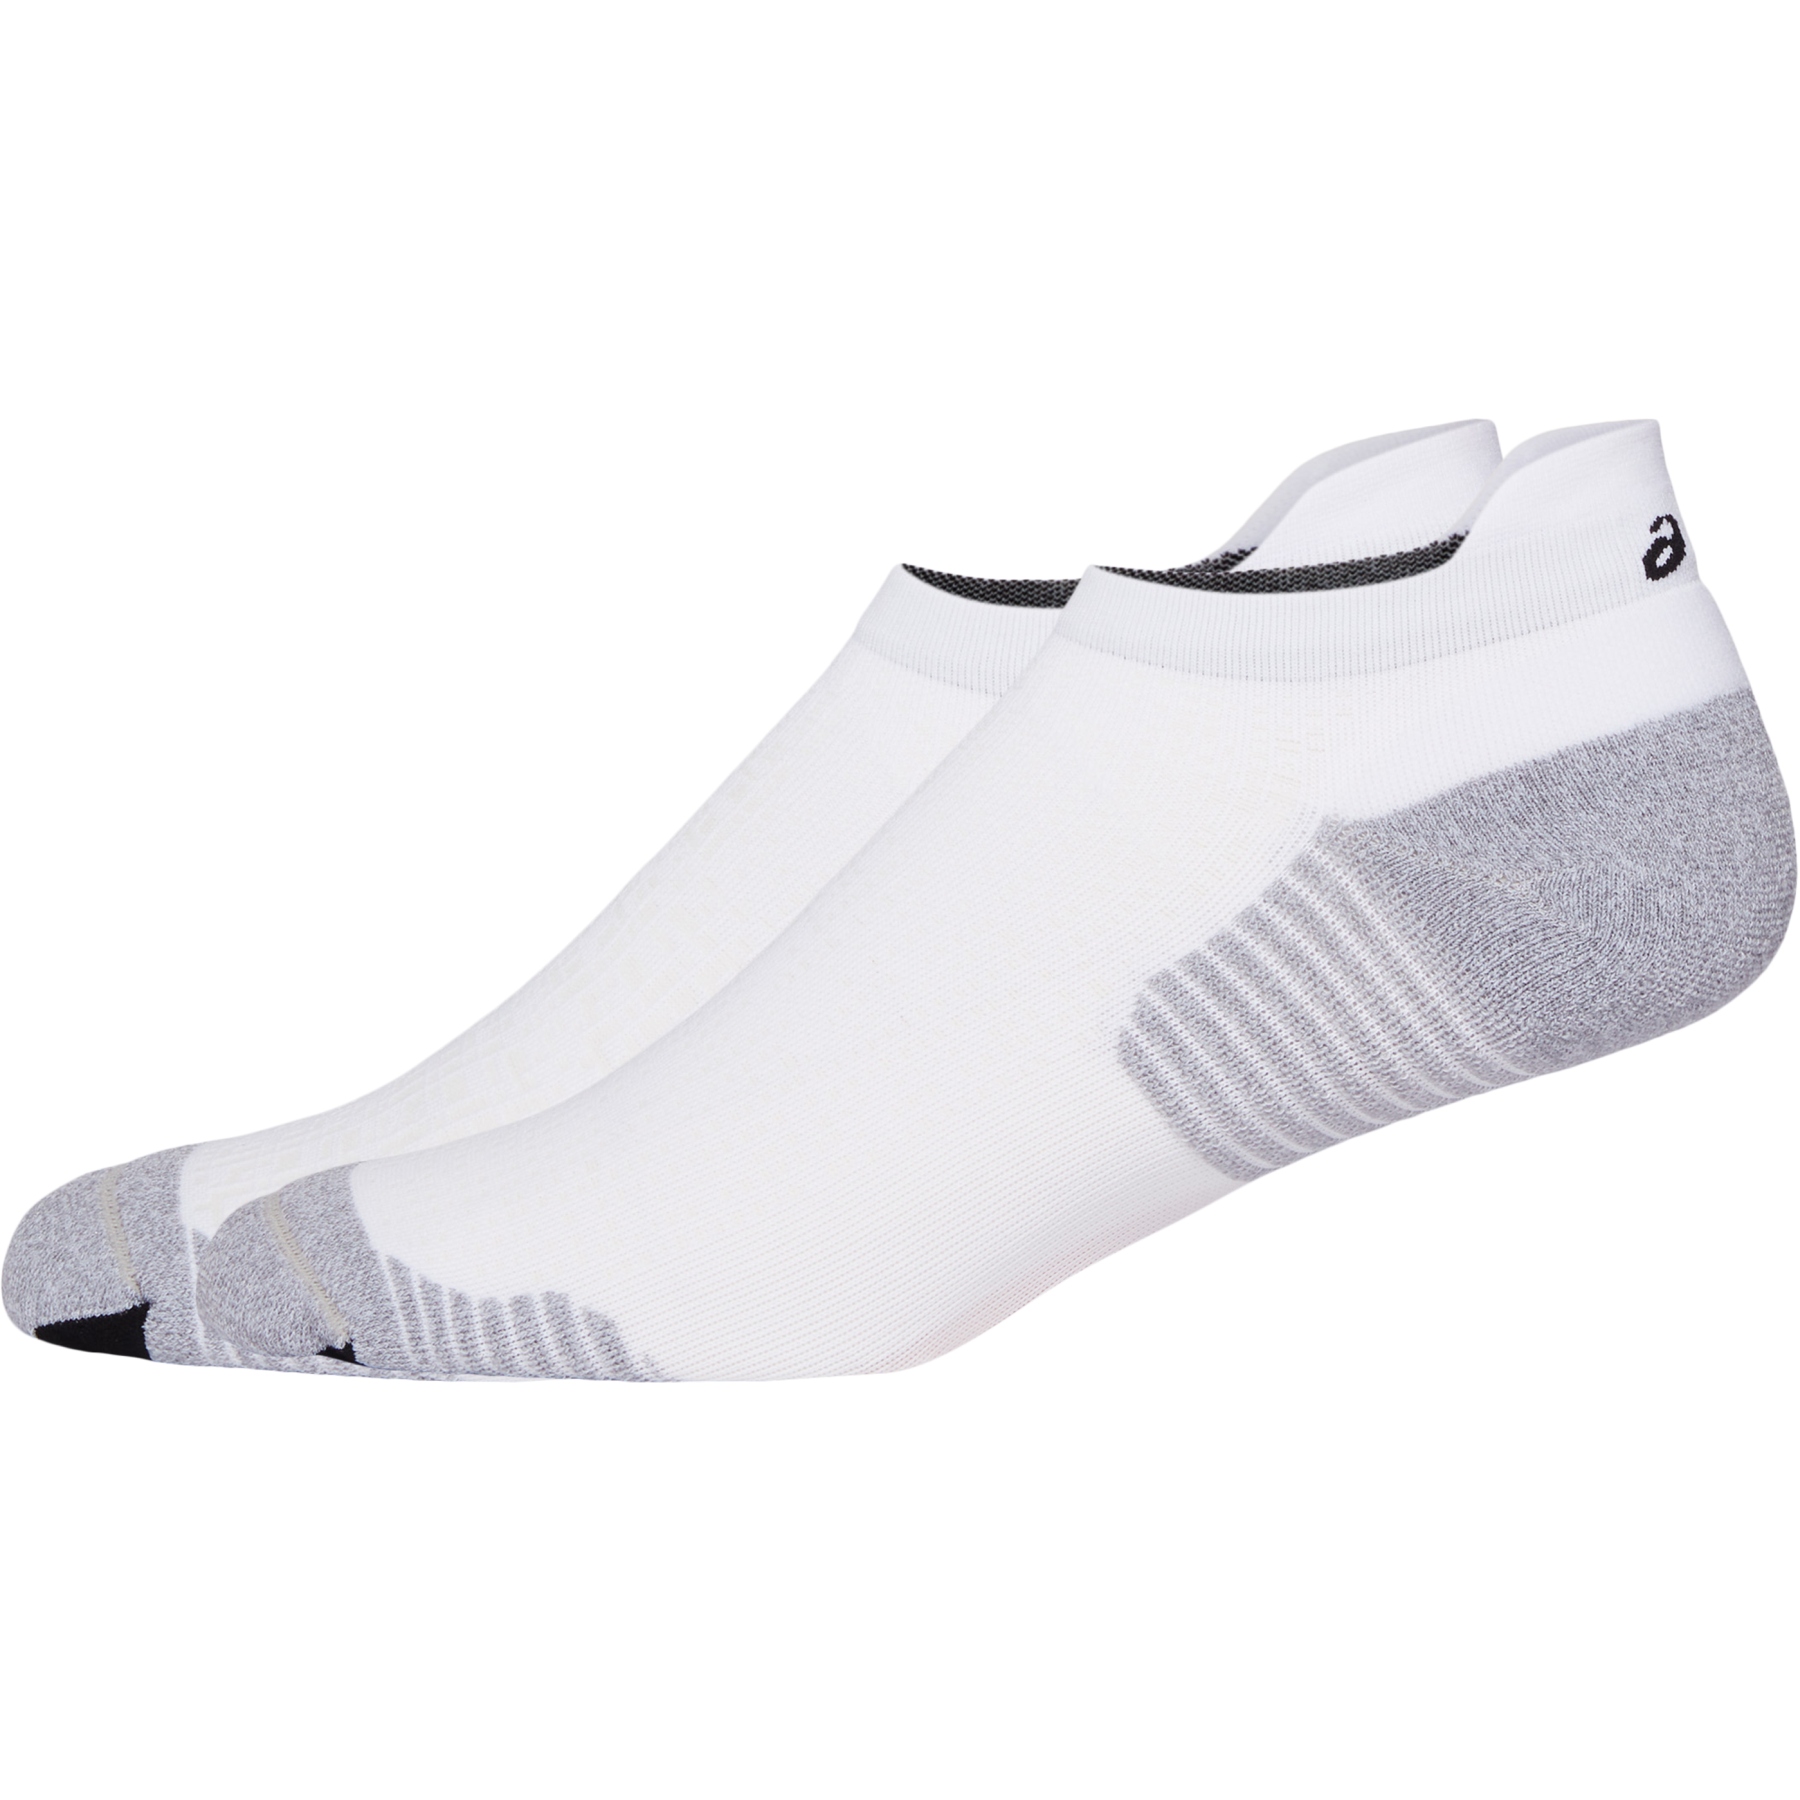 Produktbild von asics Sprintride Run Ankle Socken - brilliant white